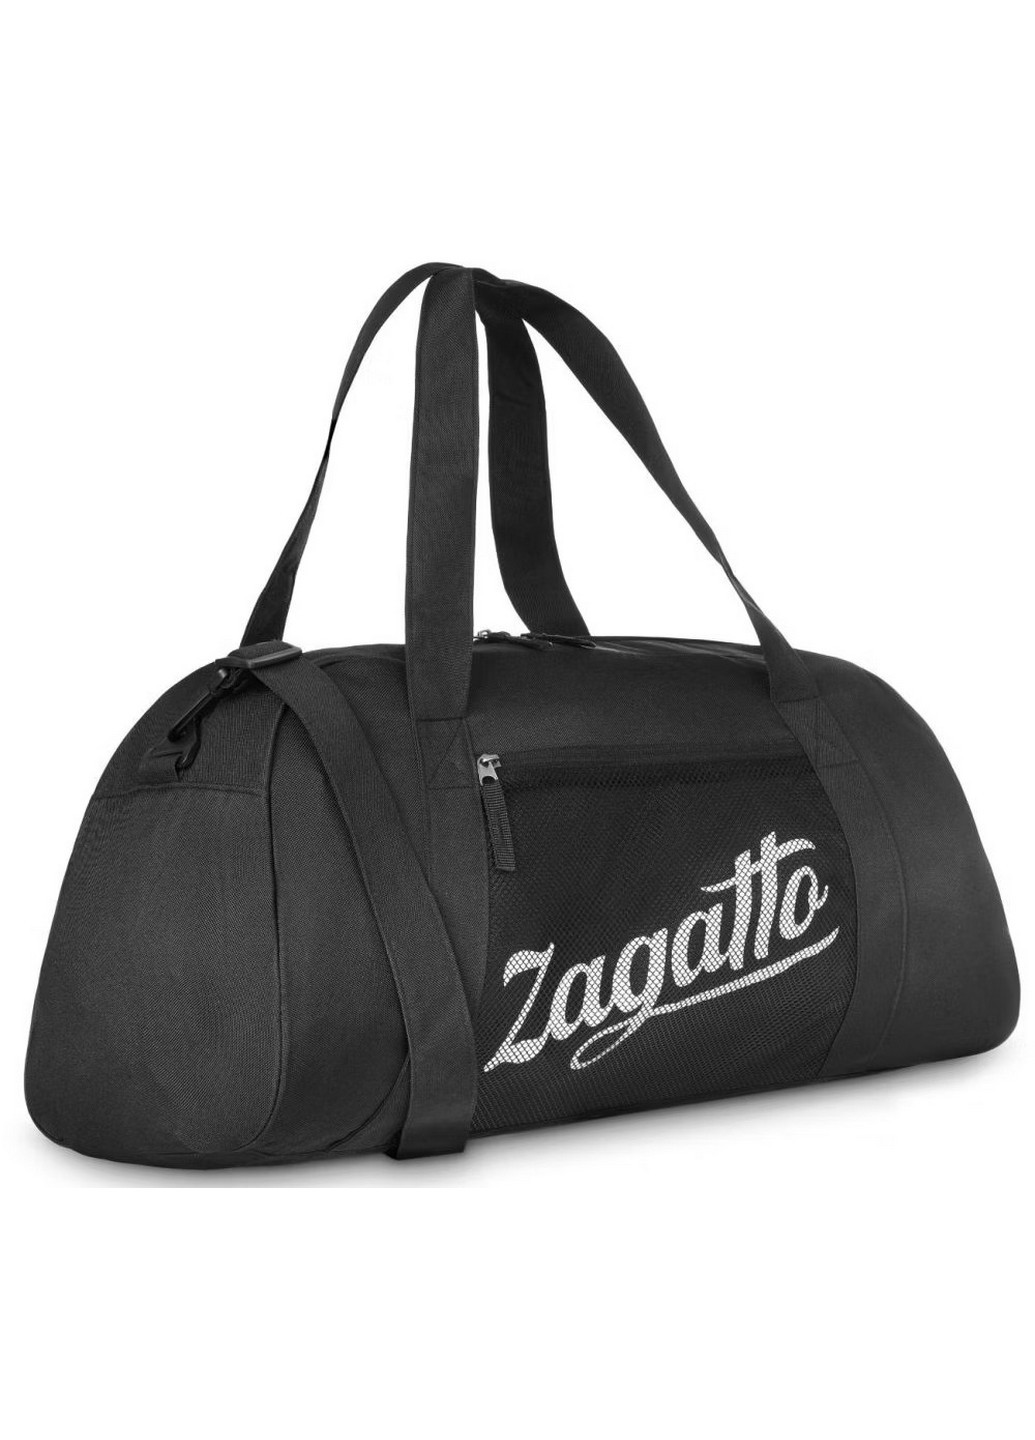 Спортивная сумка 55x28x24 см Zagatto (258844907)